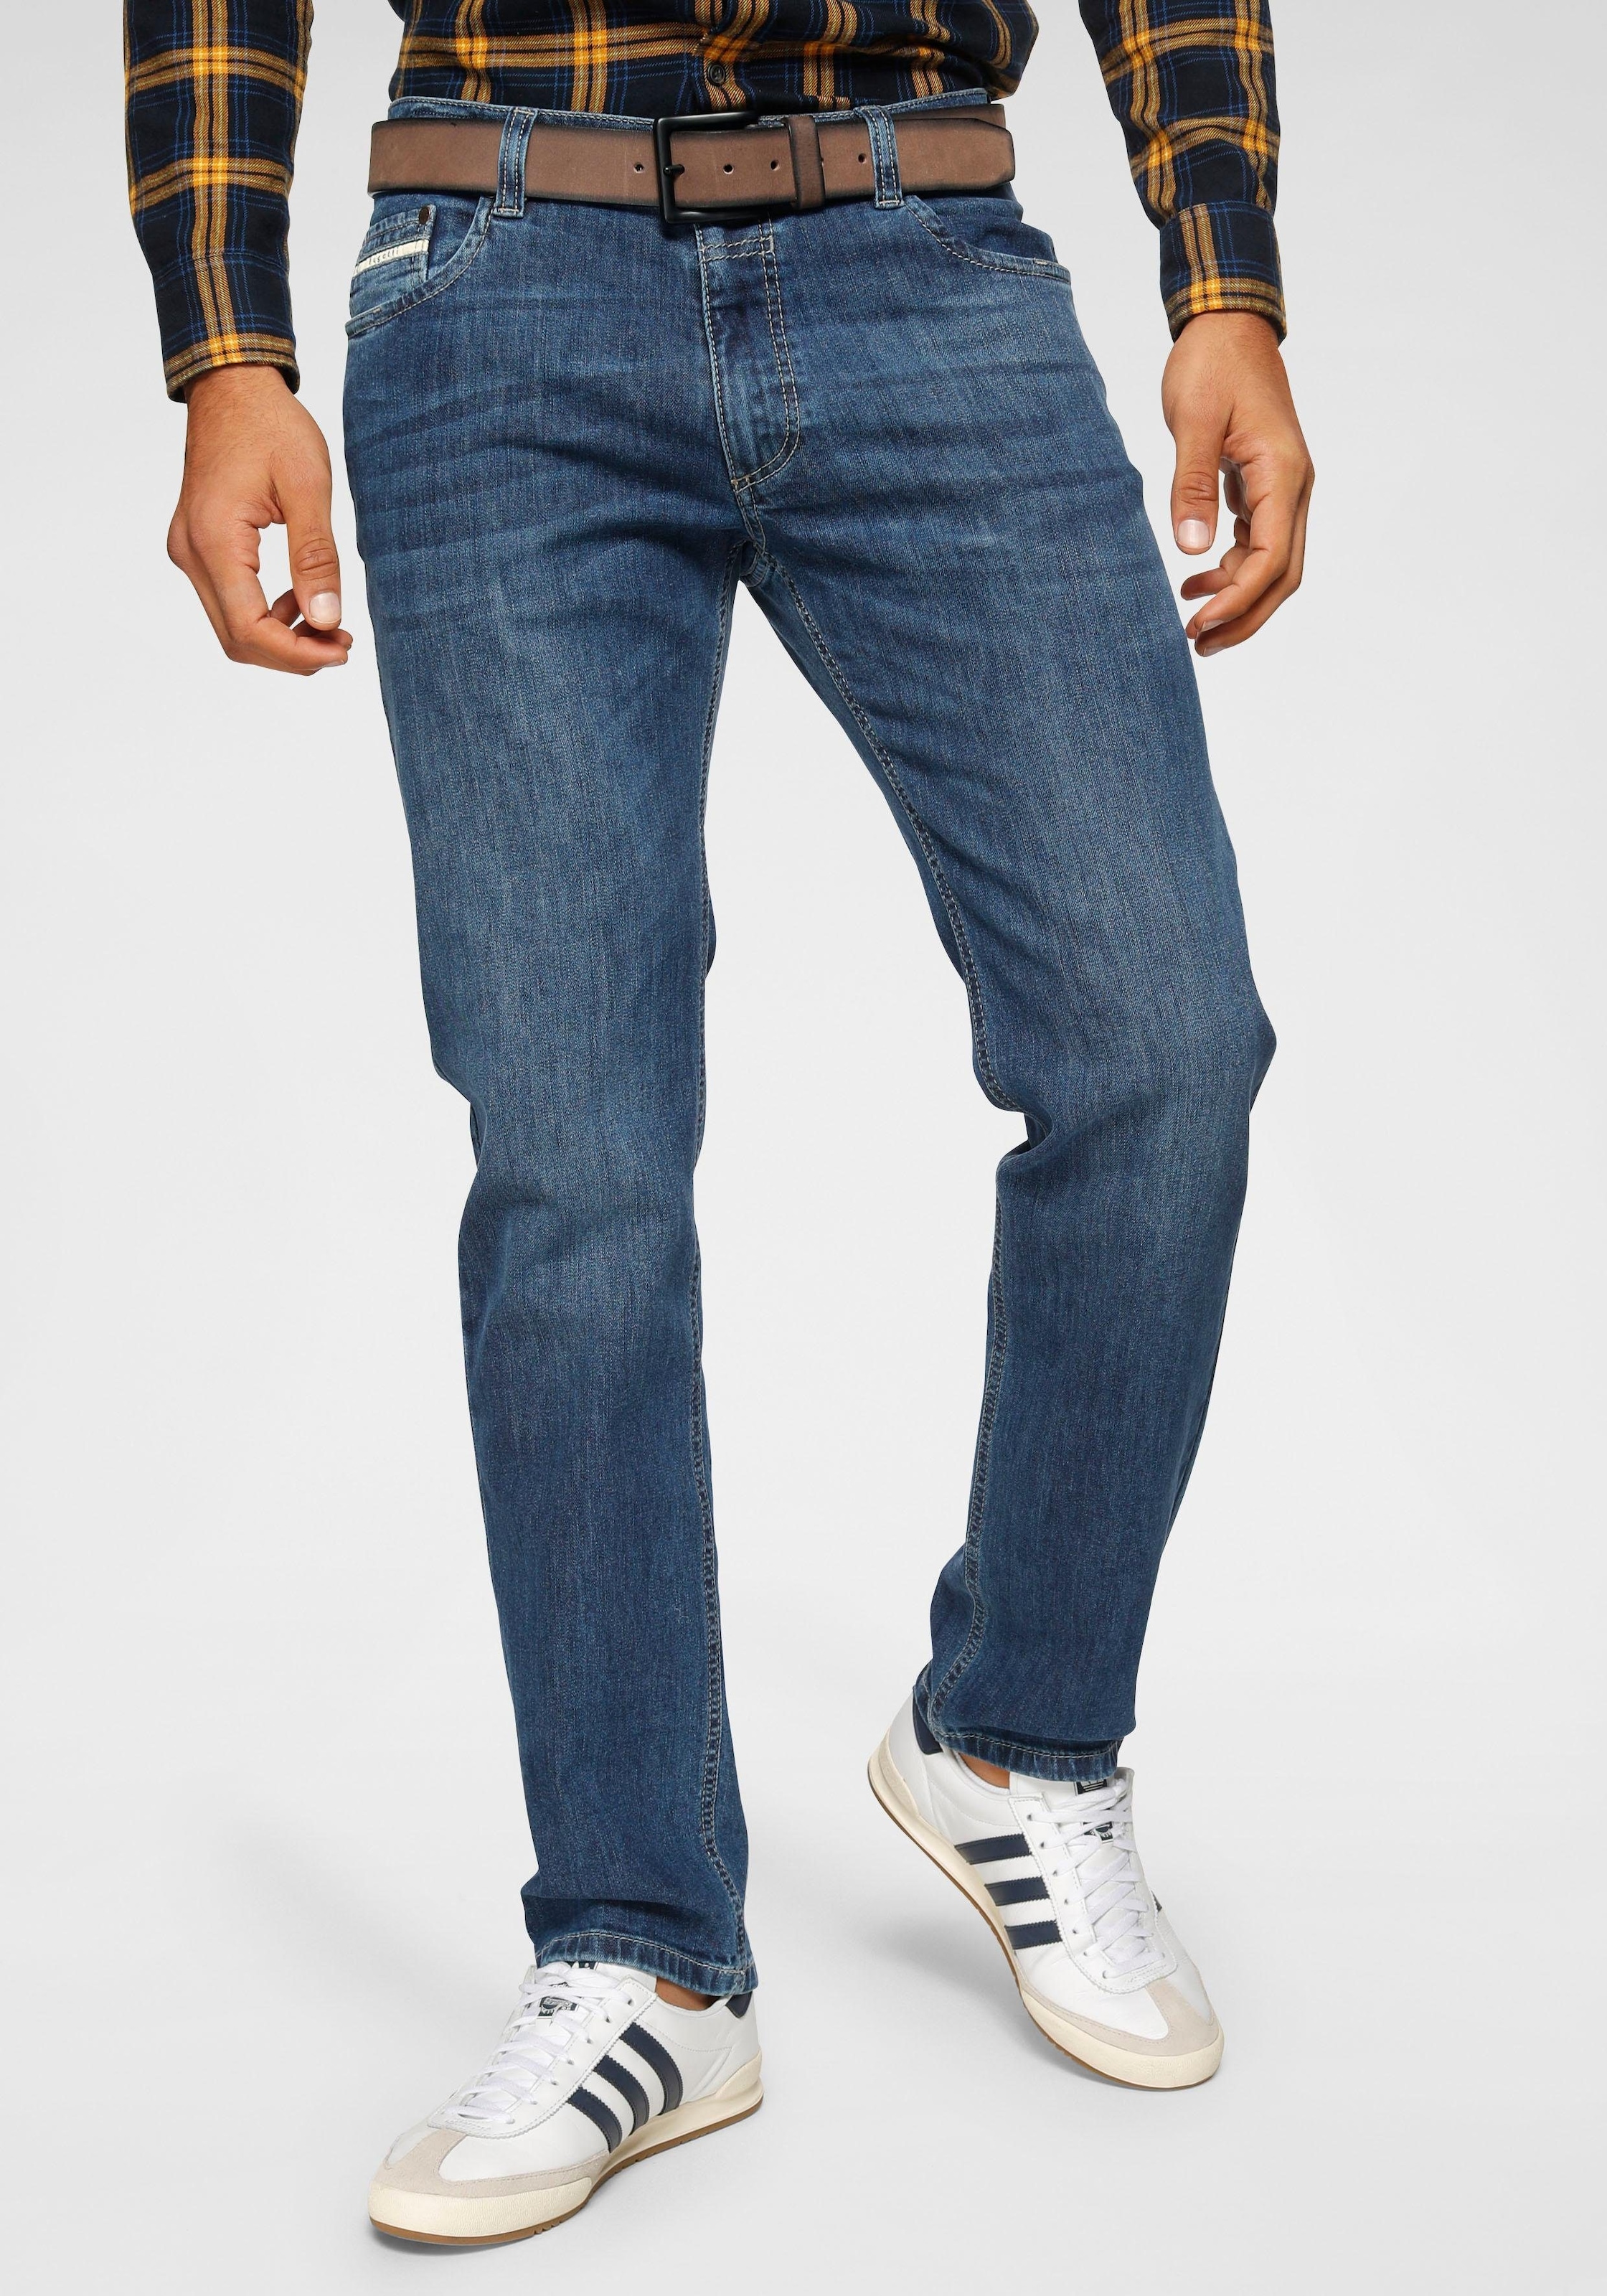 Gürtelschlaufenbund mit 5-Pocket-Jeans, günstig bugatti Zip-fly kaufen